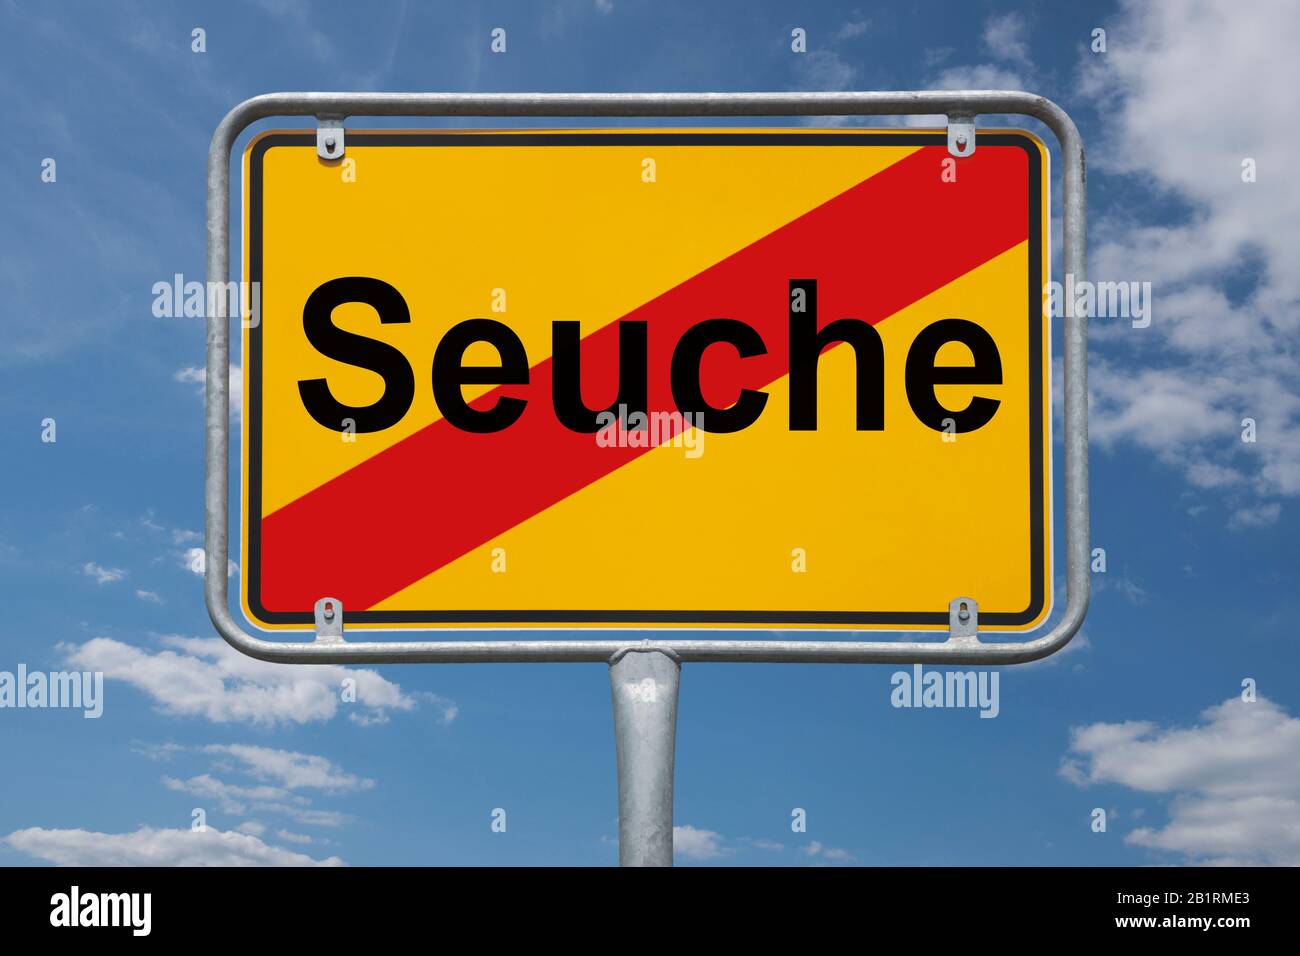 Inscripción Seuche (epidemic) en una señal de tráfico, signo de nombre de lugar Alemania, final de la ciudad Foto de stock